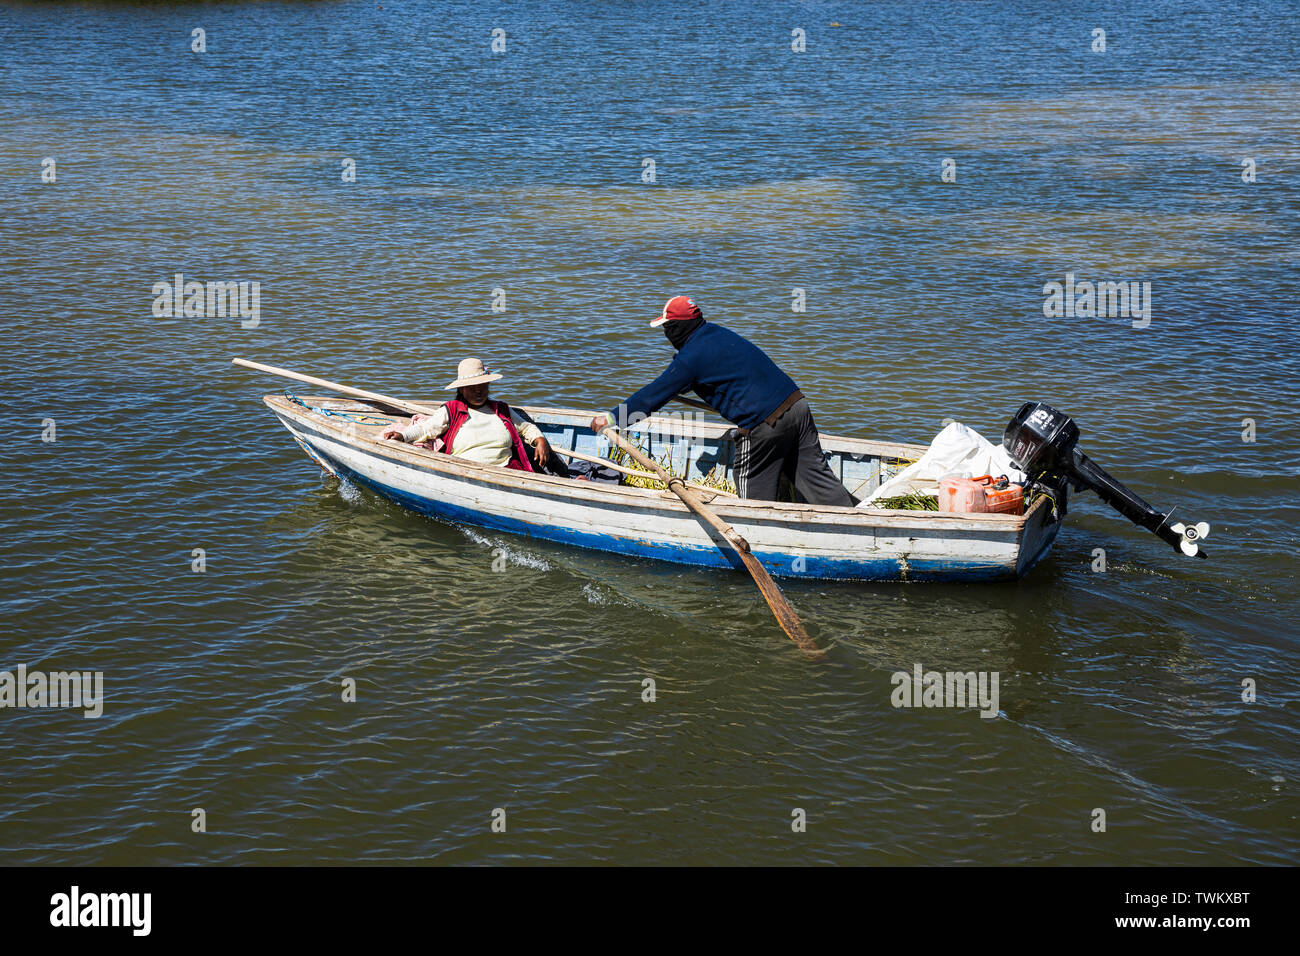 Boats navigating on Lake Titicaca, Peru, South America Stock Photo